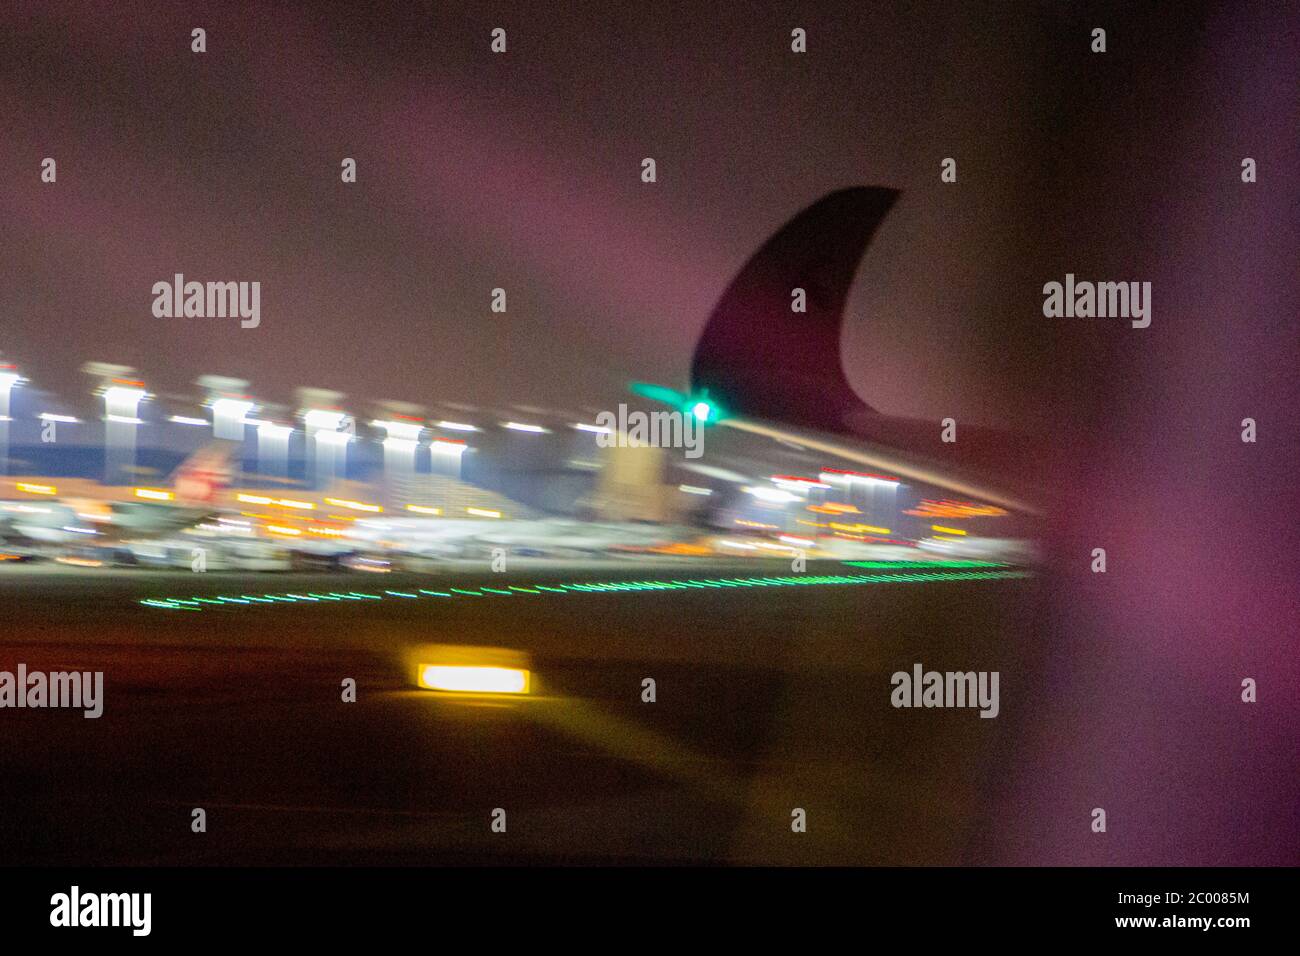 Flug in Doha International Airport während der Sperrung durch den COVID-19-Virus verursacht. Weltweit ist die Luftverkehrsbranche stark von dem massiven Rückgang des Verkehrs betroffen. Stockfoto